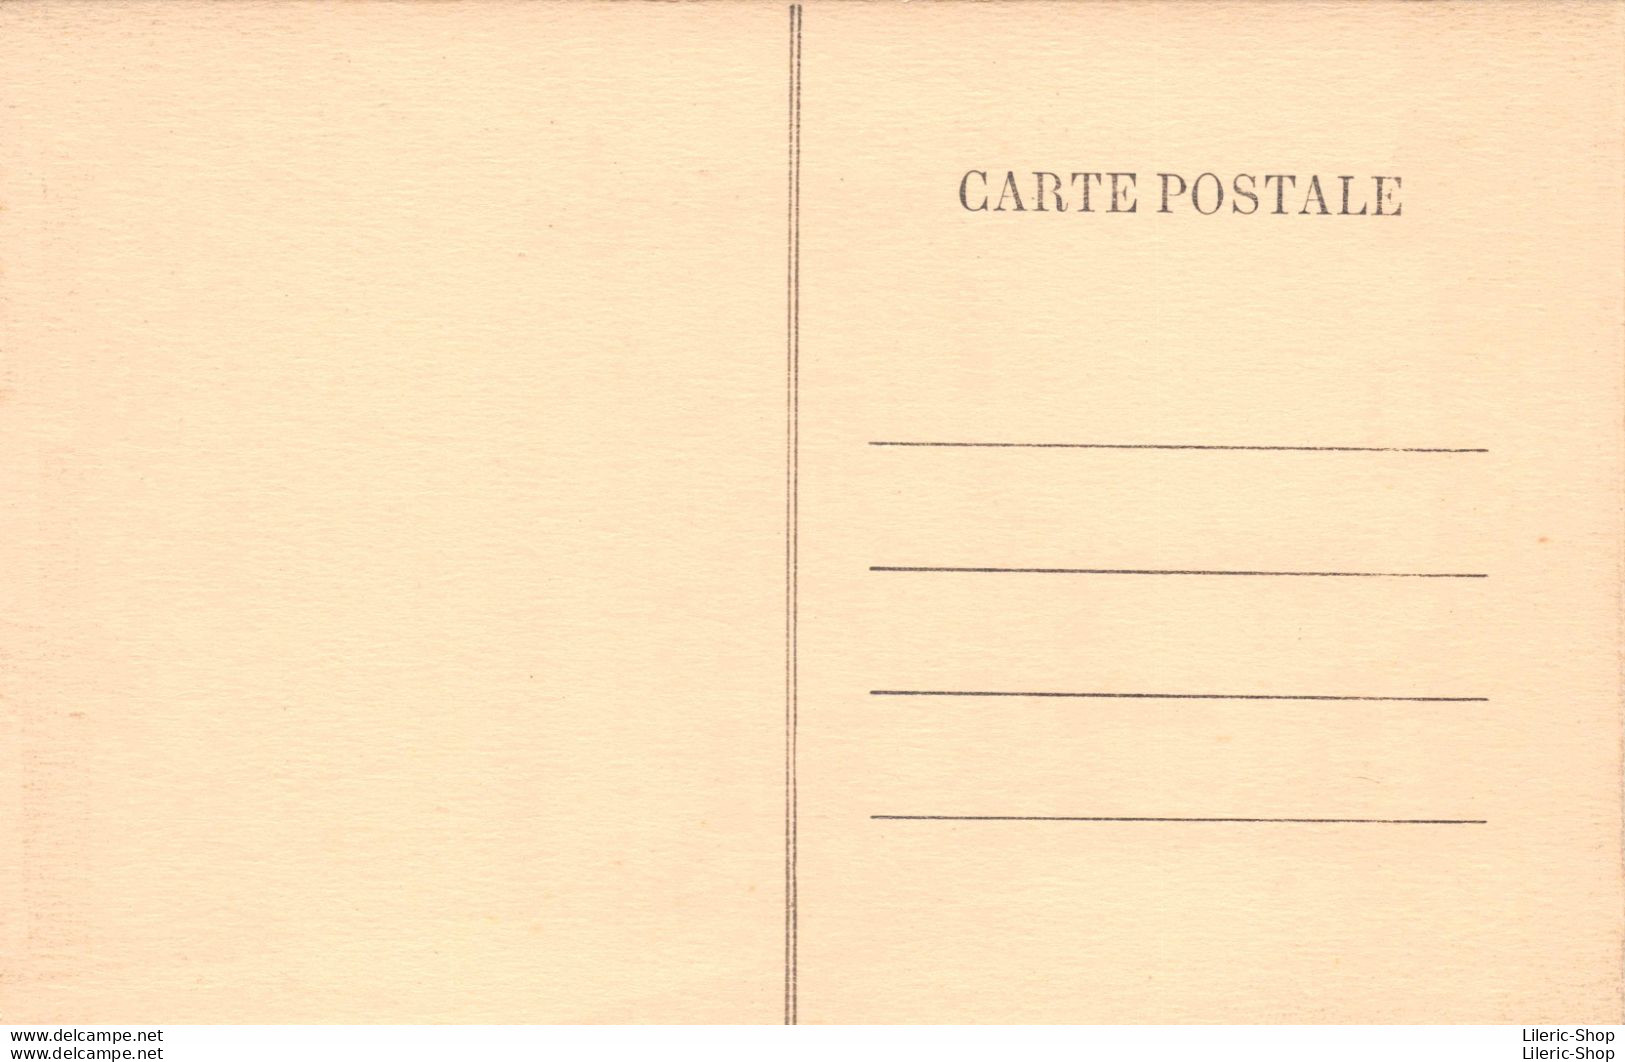 [07]  La Louvesc -  Central Hôtel - Patisserie - Café PAULOZ - Autocar - Enseigne BYRRH - Éd. V. CELLE Cpa ± 1920 - La Louvesc